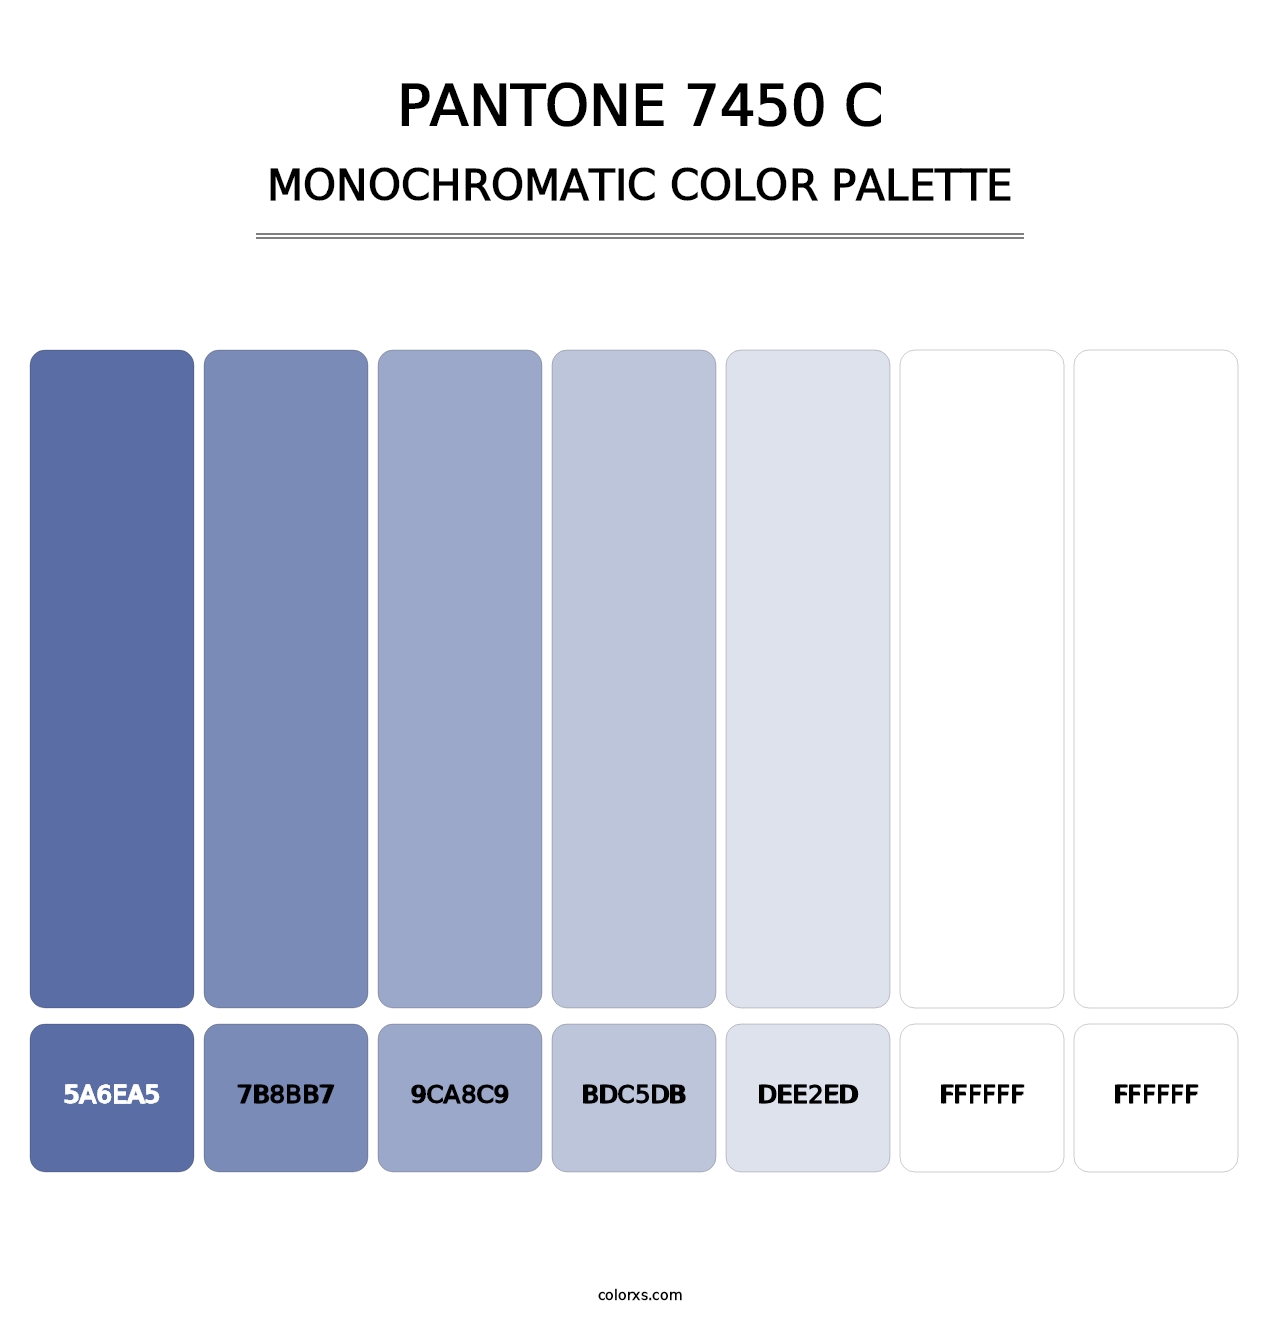 PANTONE 7450 C - Monochromatic Color Palette